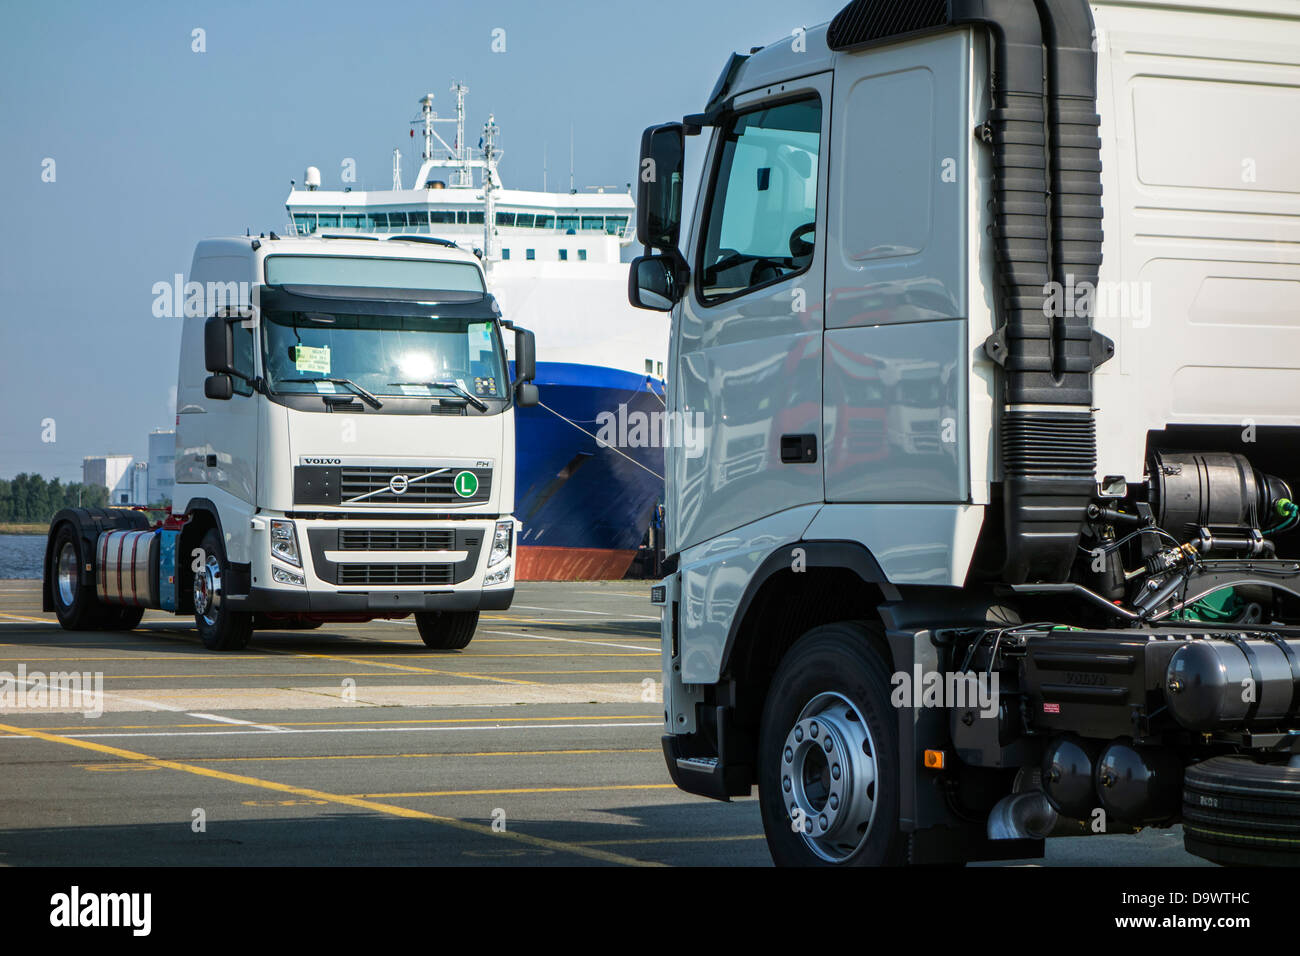 Camions de l'usine de montage de camions Volvo attendent d'être chargés sur des navires RORO / au port de Gand, Belgique Banque D'Images